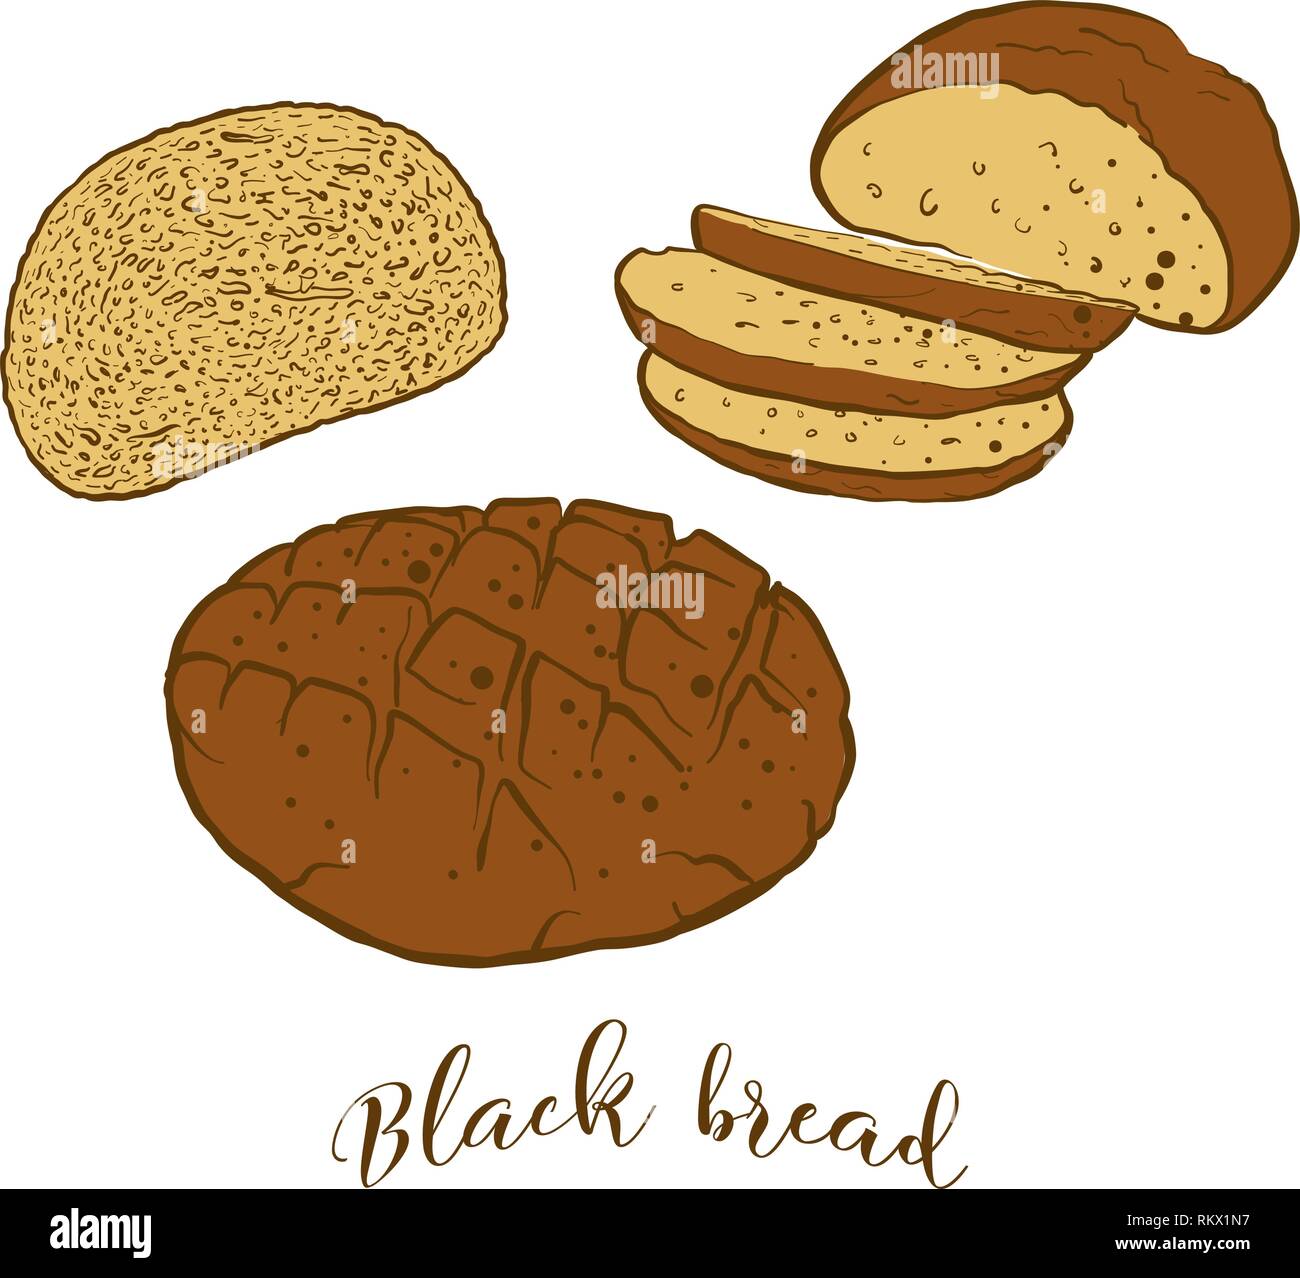 Farbige Skizzen der schwarze Brot Brot. Vektor Zeichnung von Roggenbrot essen, in der Regel in Europa bekannt. Farbige Brot Abbildung Serie. Stock Vektor